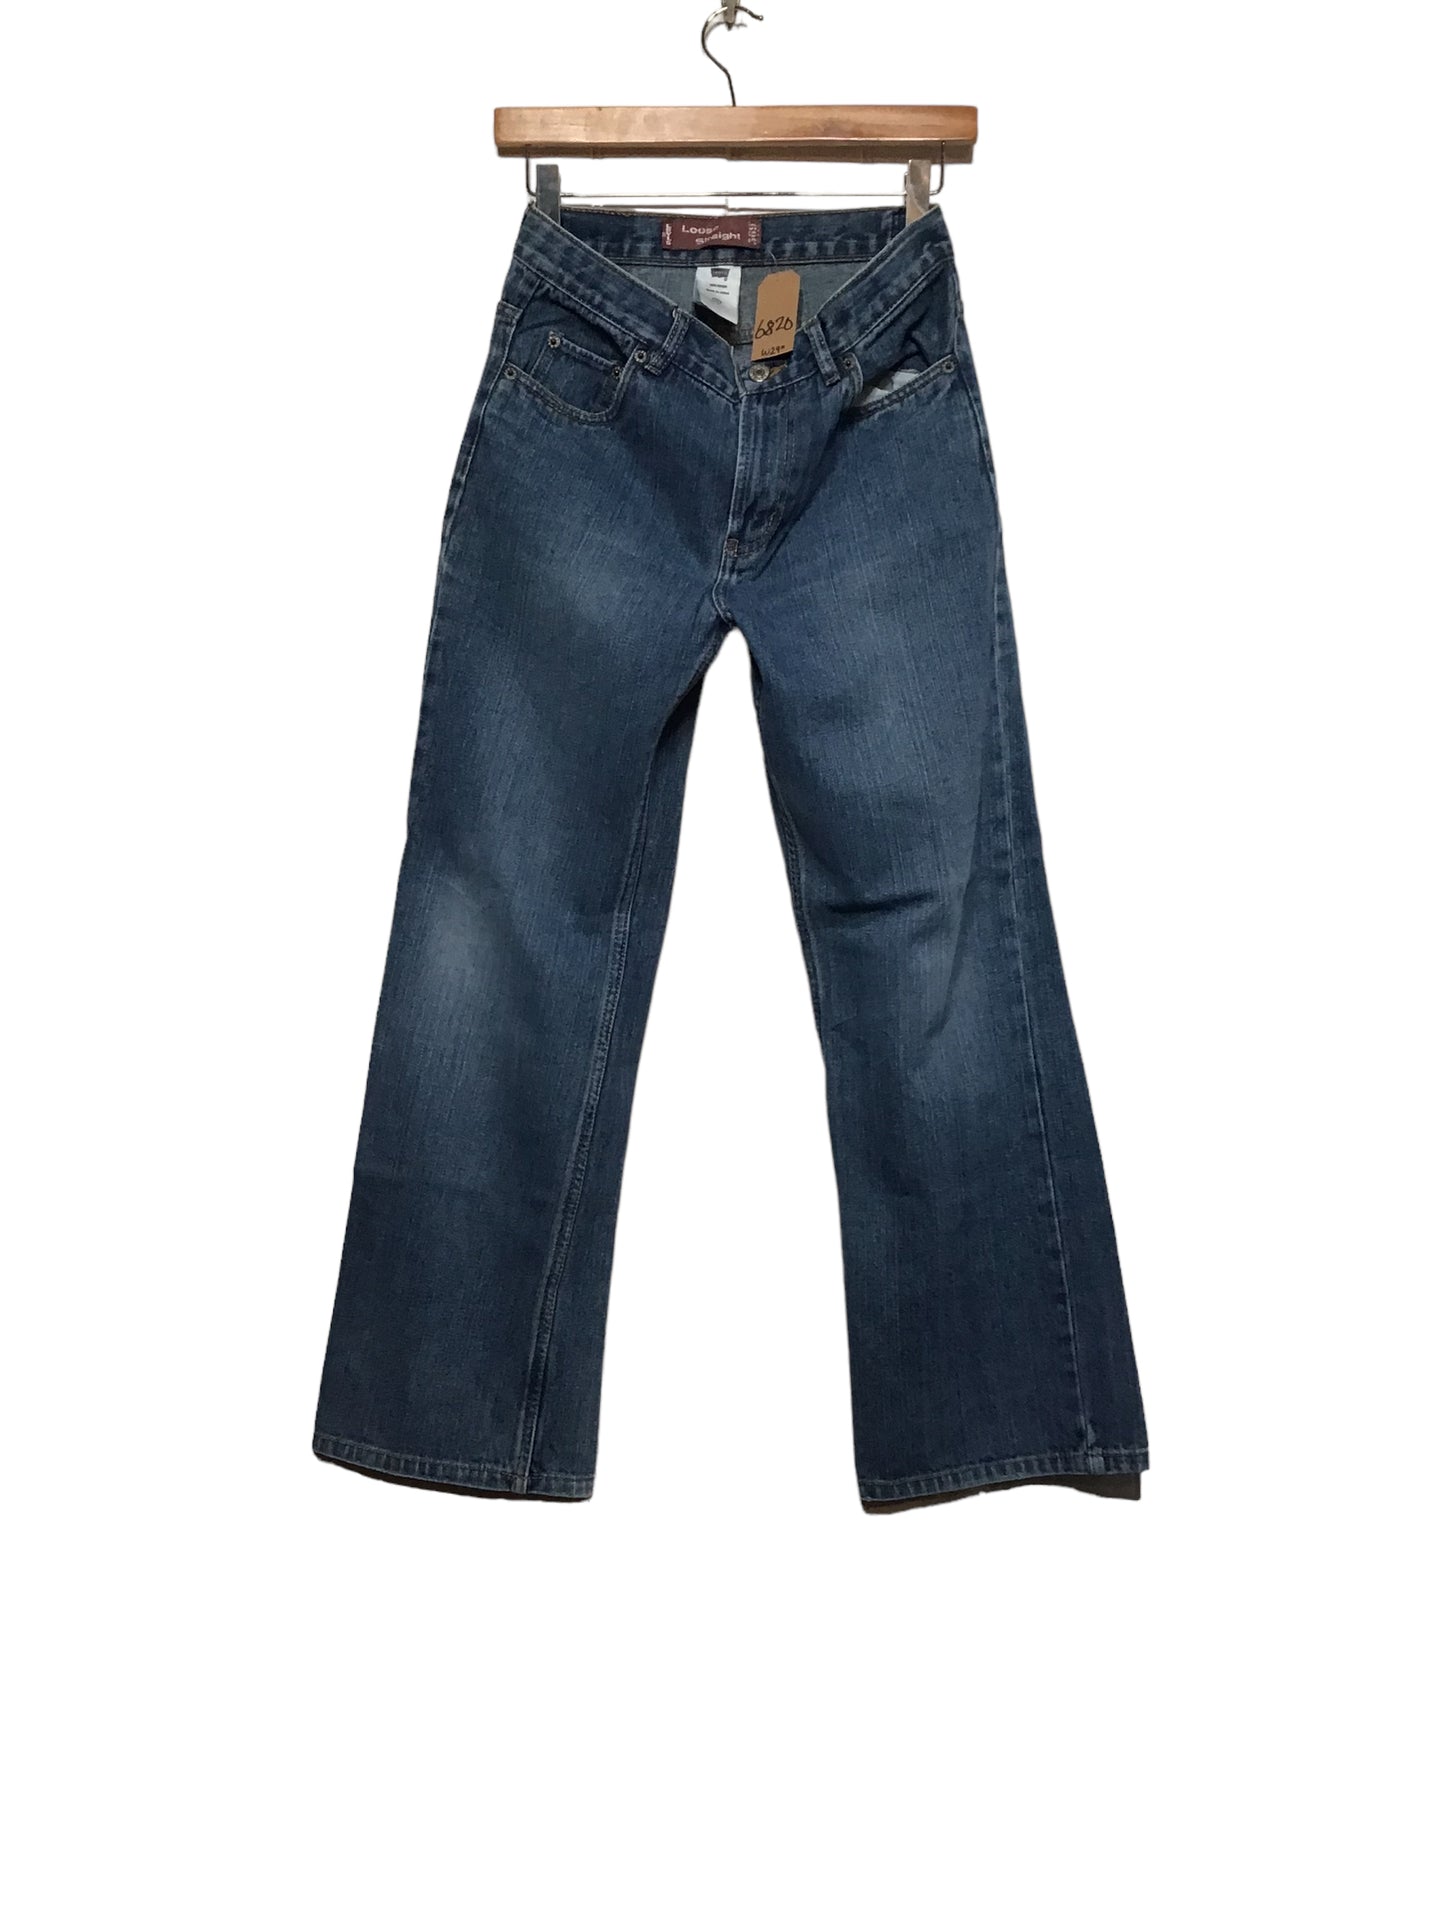 Levi  569 Jeans (30x28)